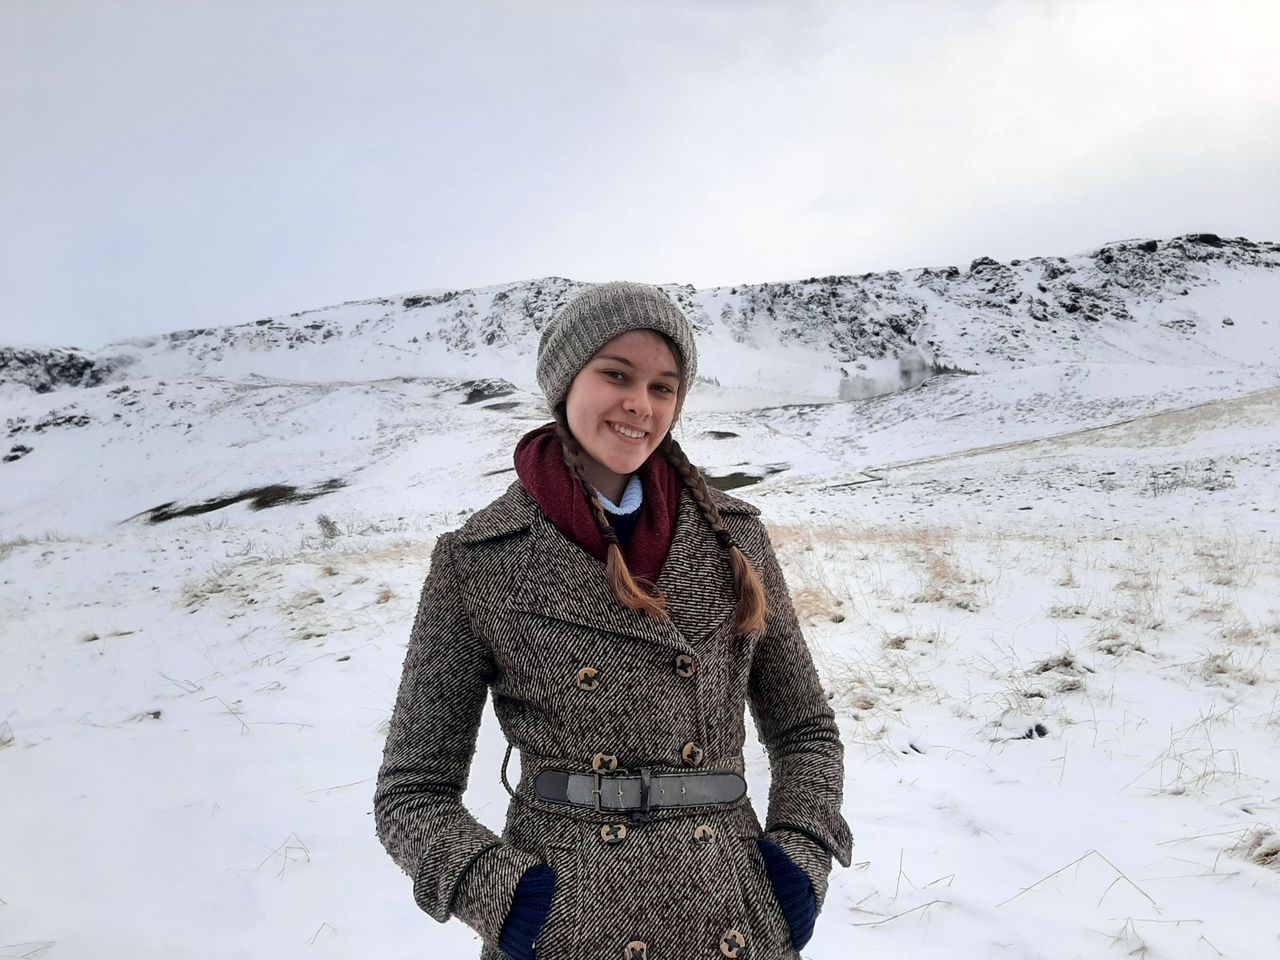 Jana Kvapilová on a school trip to Iceland